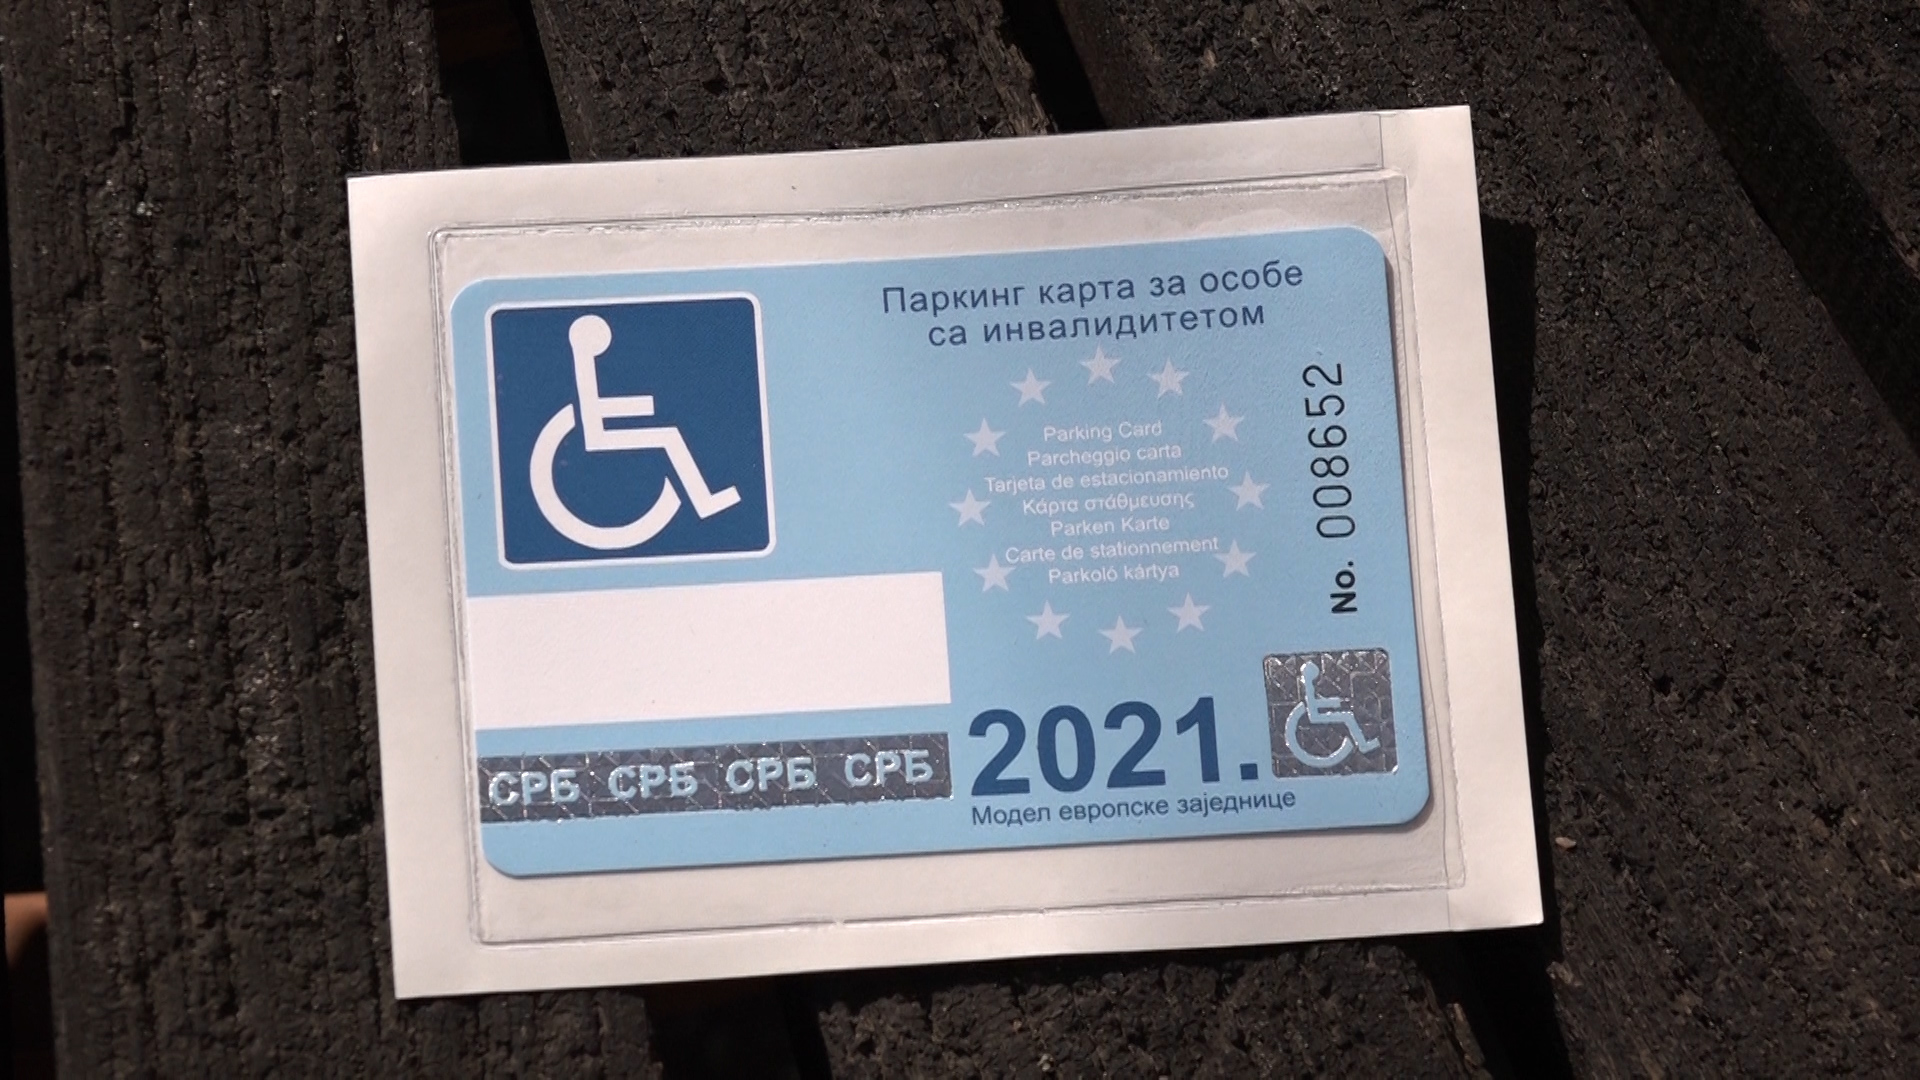 Izdavanje parking kartica osobama sa invaliditetom